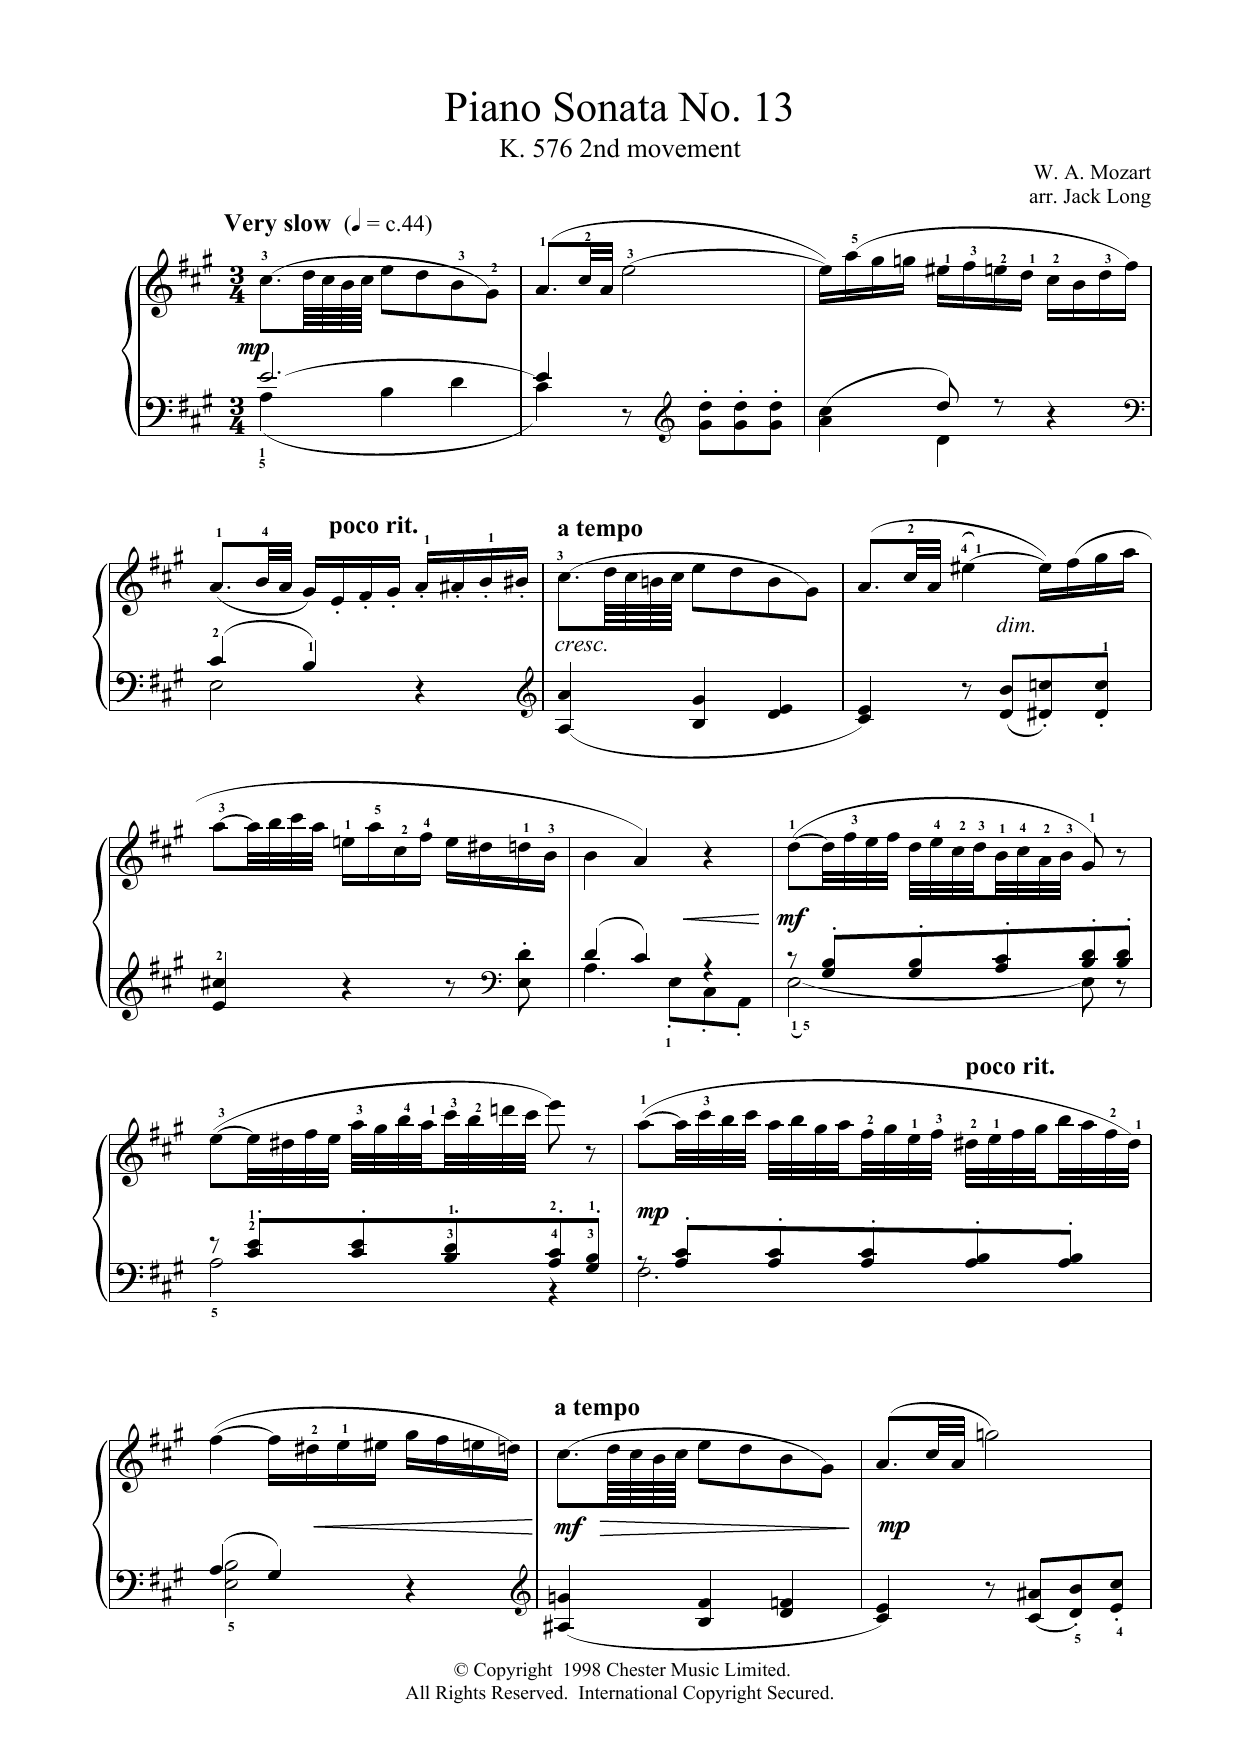 Wolfgang Amadeus Mozart Piano Sonata No.13 Sheet Music Notes & Chords for Piano - Download or Print PDF